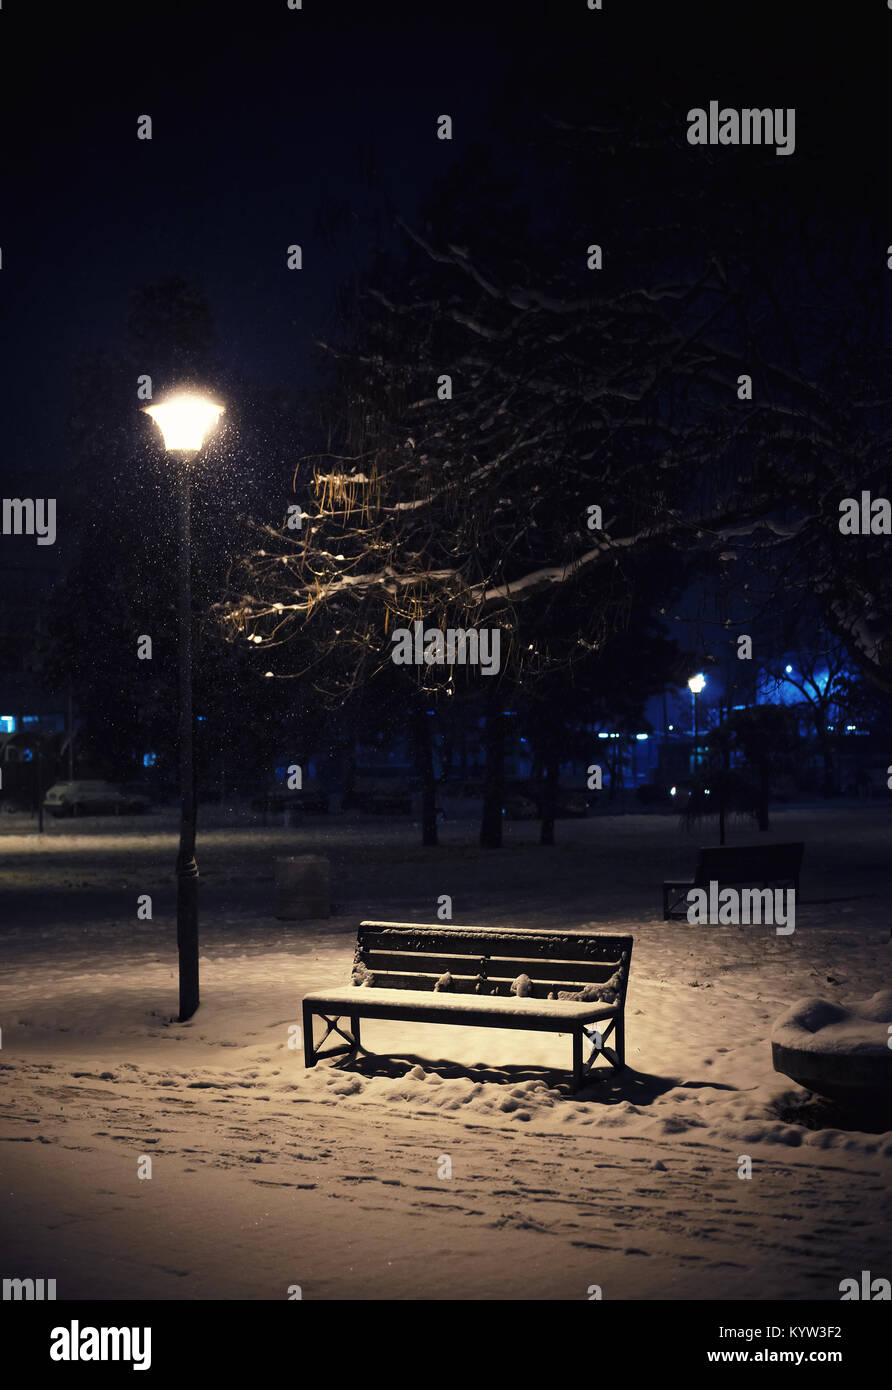 Una scena notturna da un parco cittadino, in vista di un banco, un lampion, e coperti di neve rami. Foto Stock